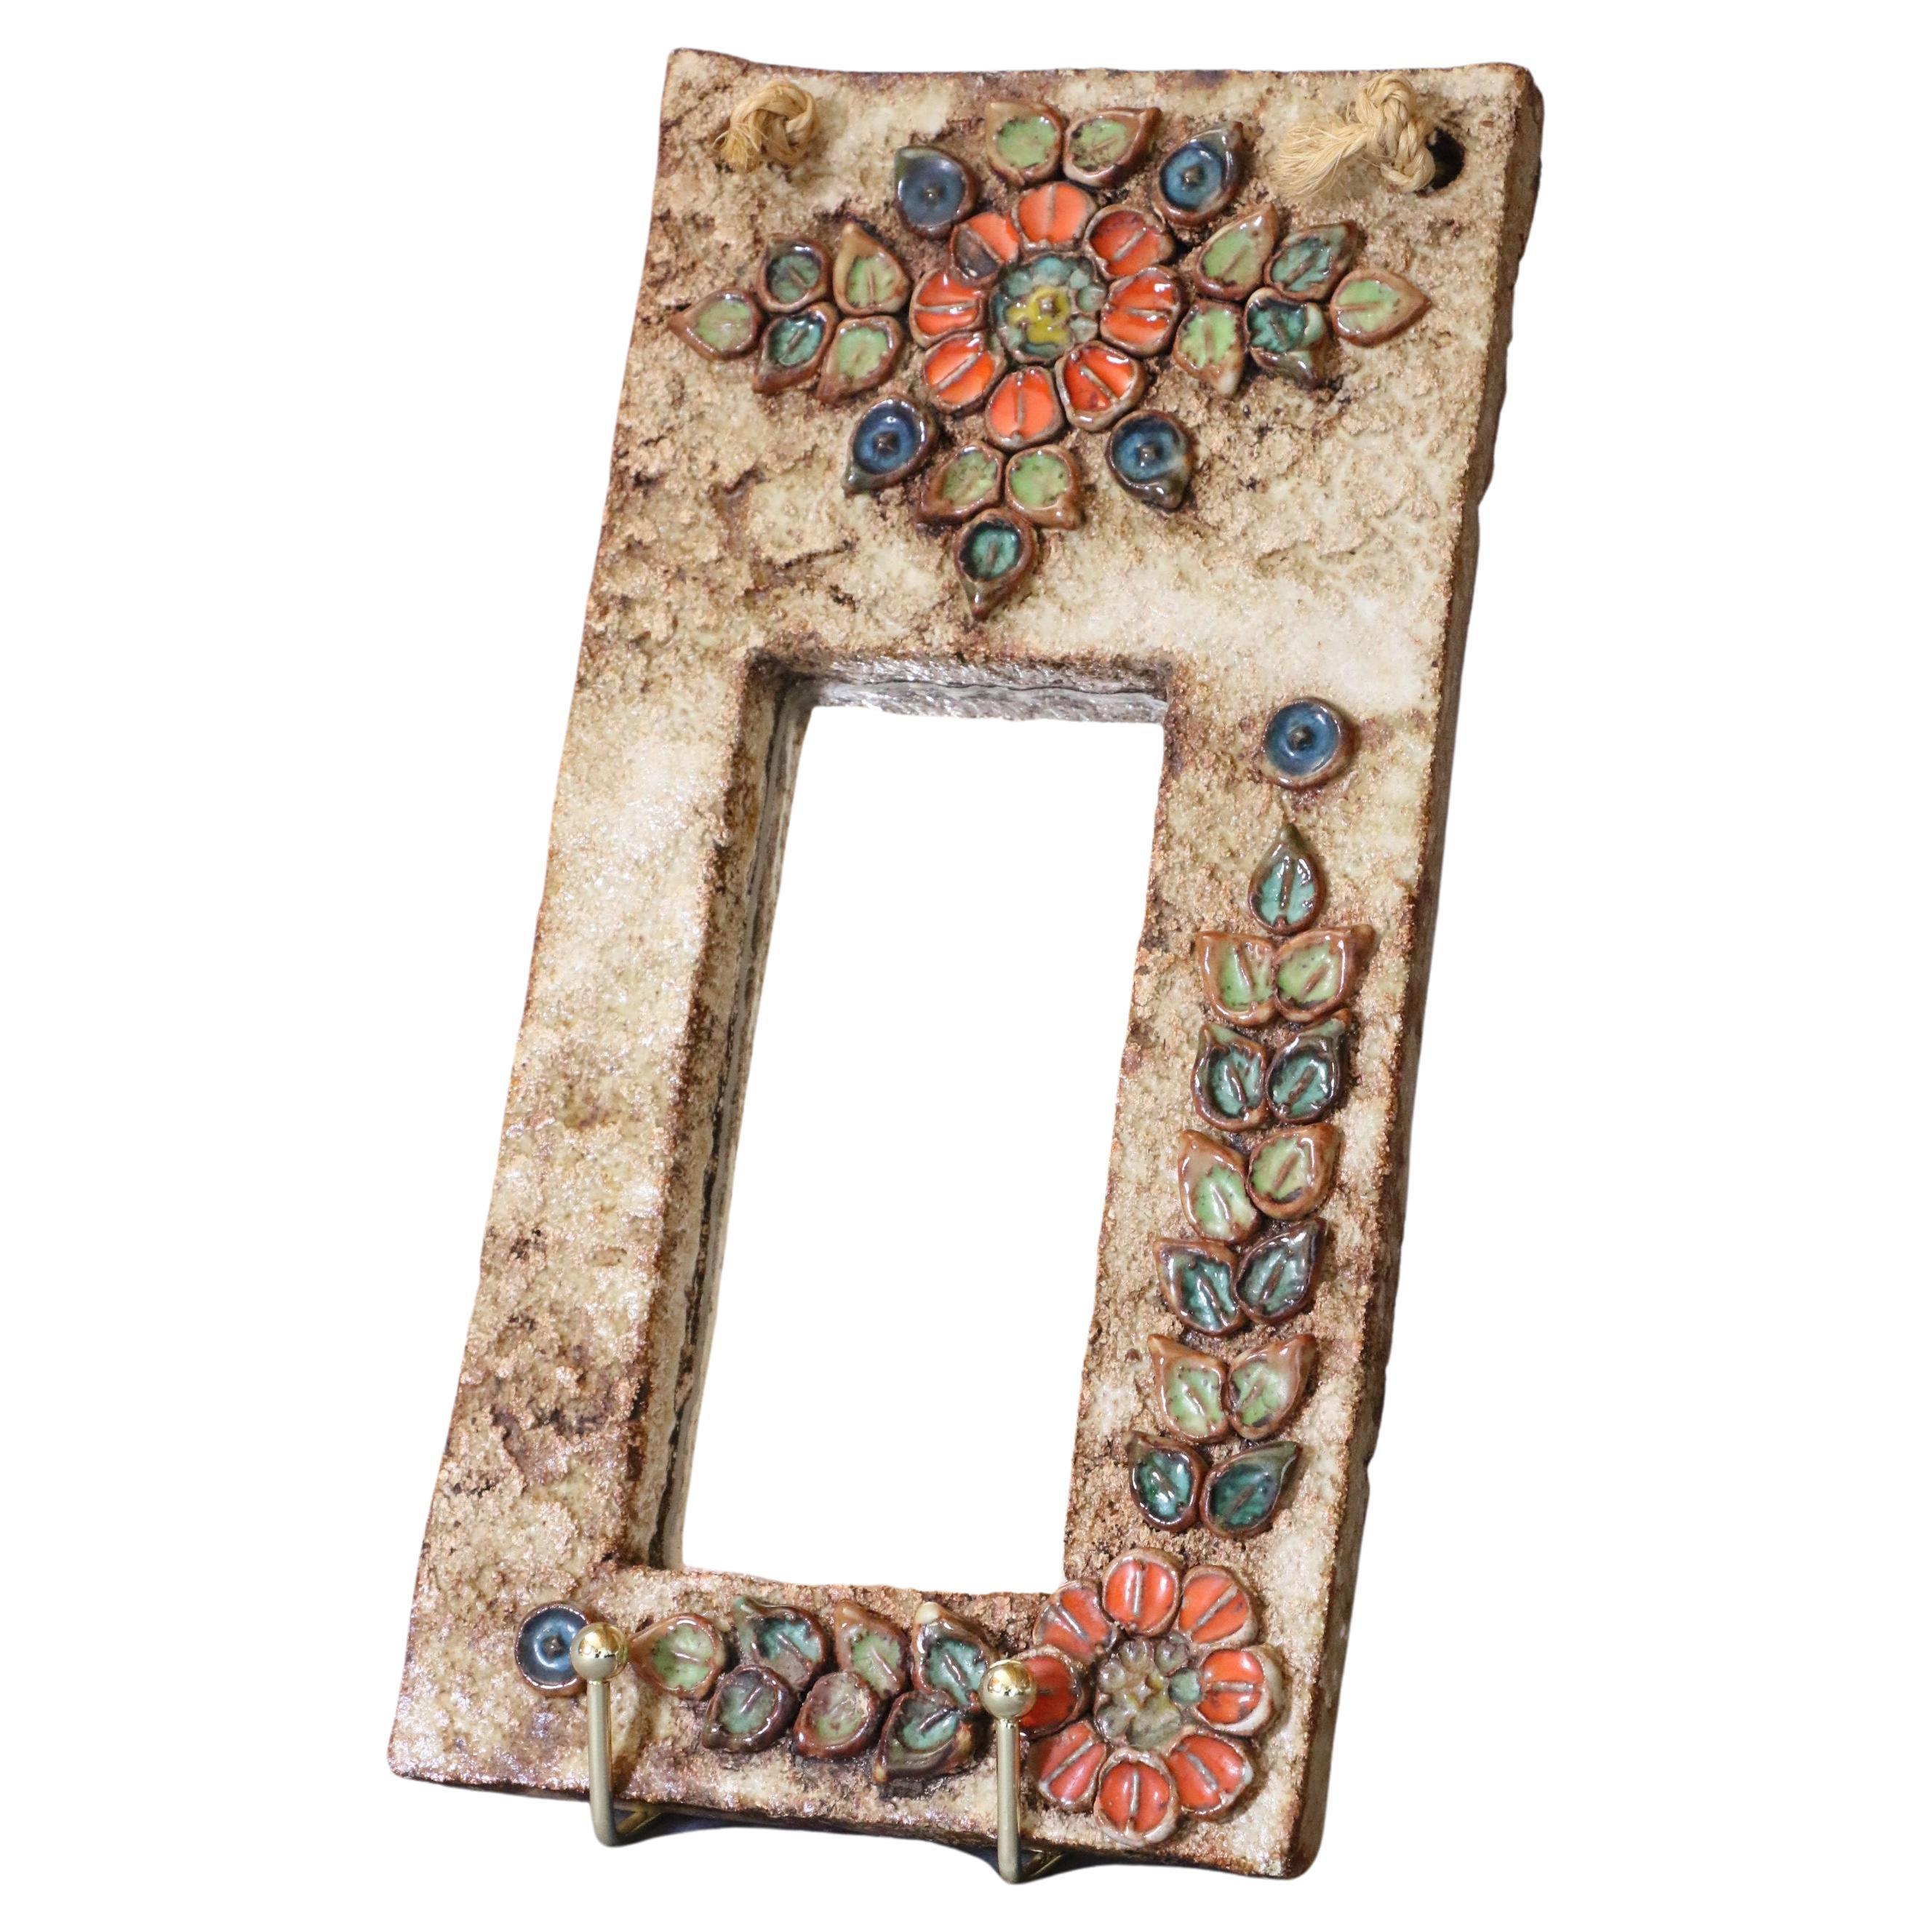 Französischer Hängespiegel aus Keramik - Vallauris, Frankreich - 1950er Jahre
Wird La Roue-Vallauris zugeschrieben. 

Ockerfarbener, glasierter Keramikspiegel, der auf dem Rahmen mit bunten Blumen verziert ist. Dieser hübsche Spiegel, typisch für